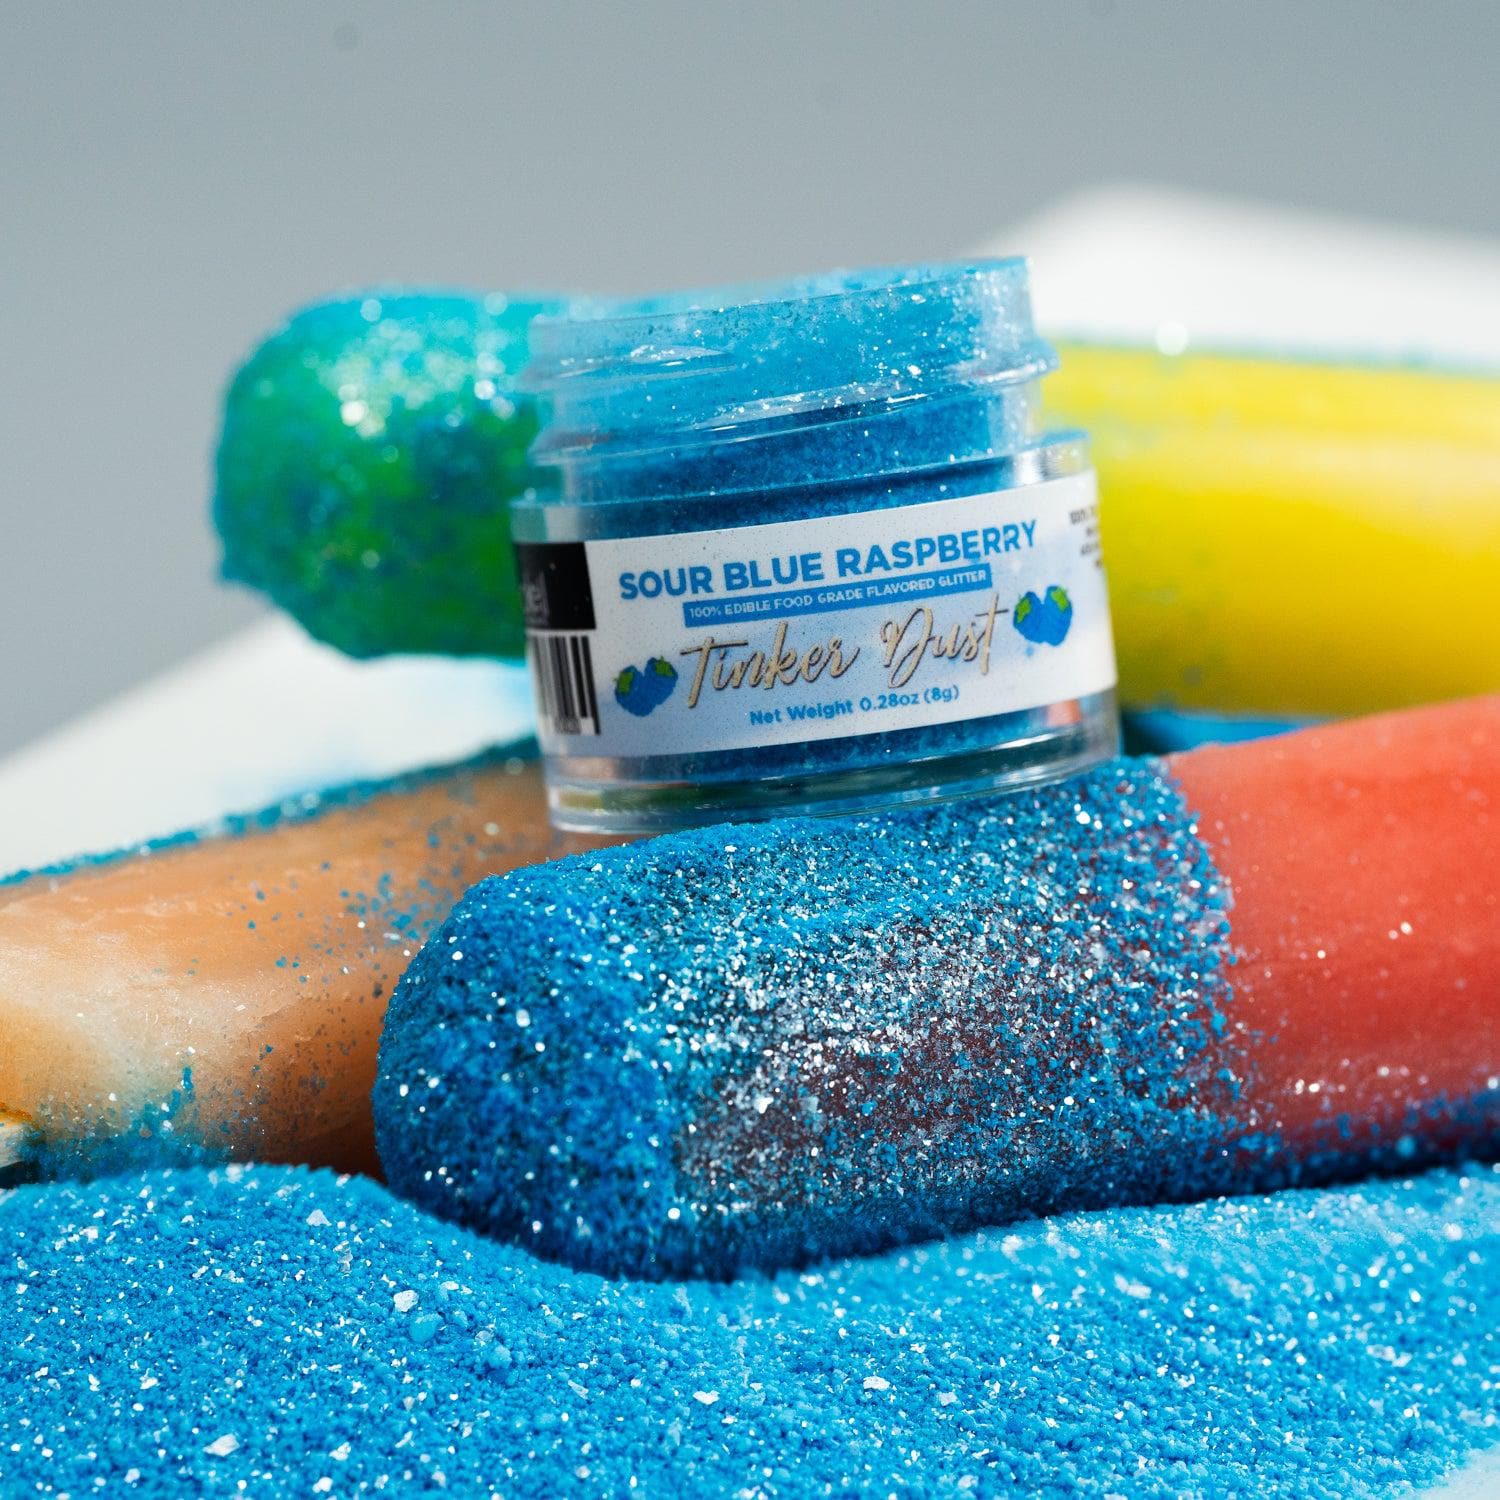 Sour Blue Raspberry Flavored Edible Glitter | Tinker Dust | Bakell